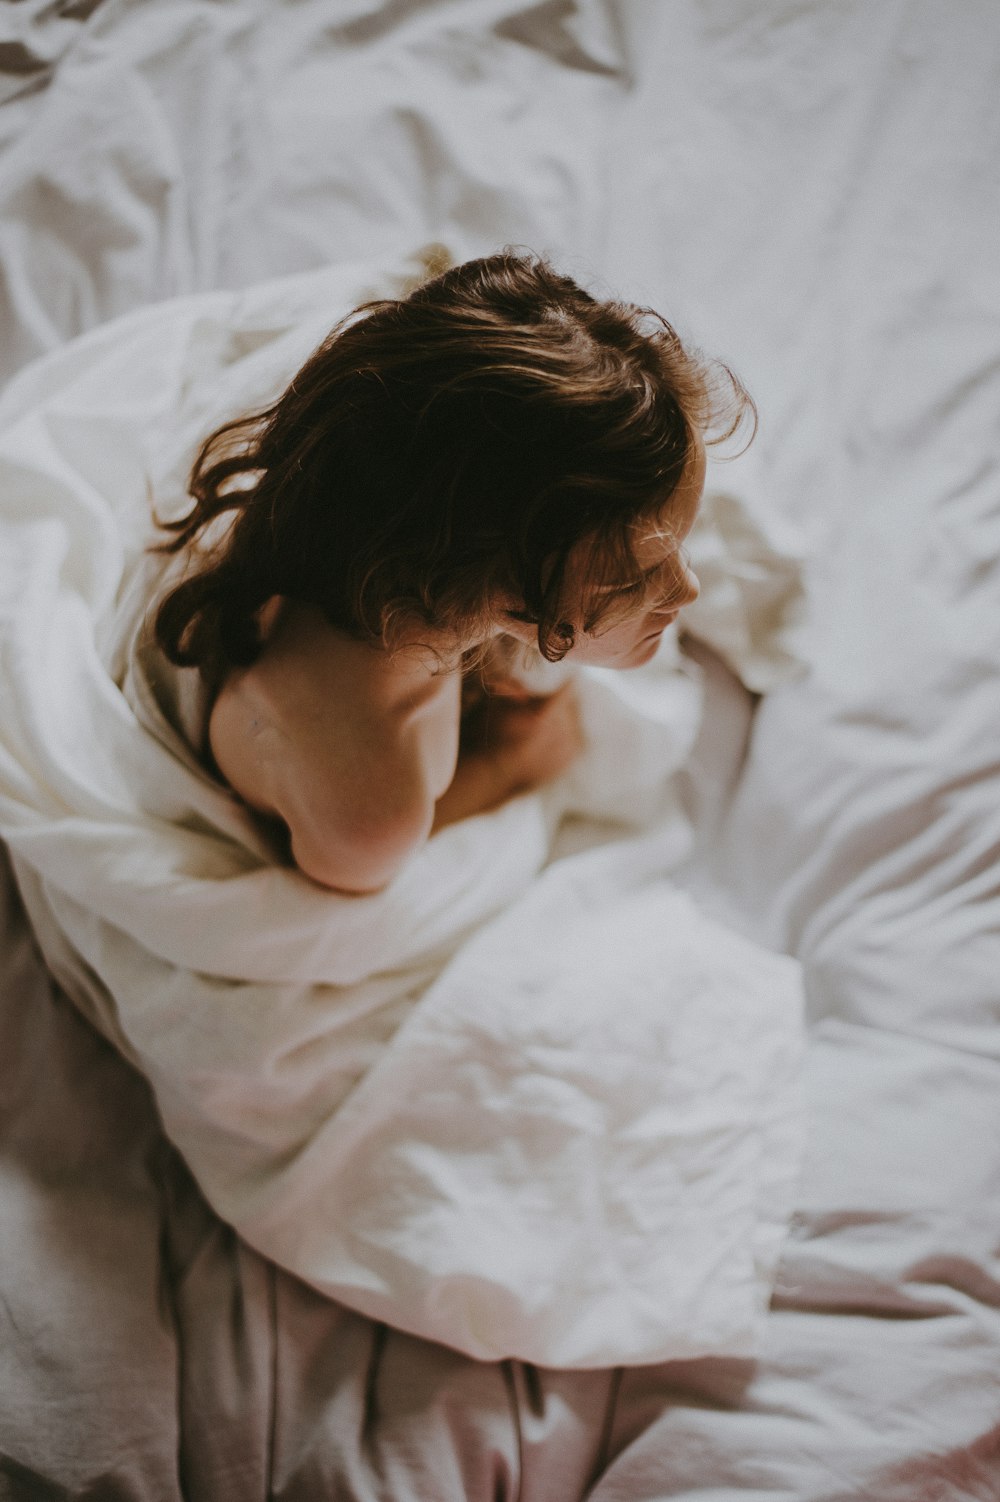 흰 담요로 덮인 침대에 앉아있는 여자